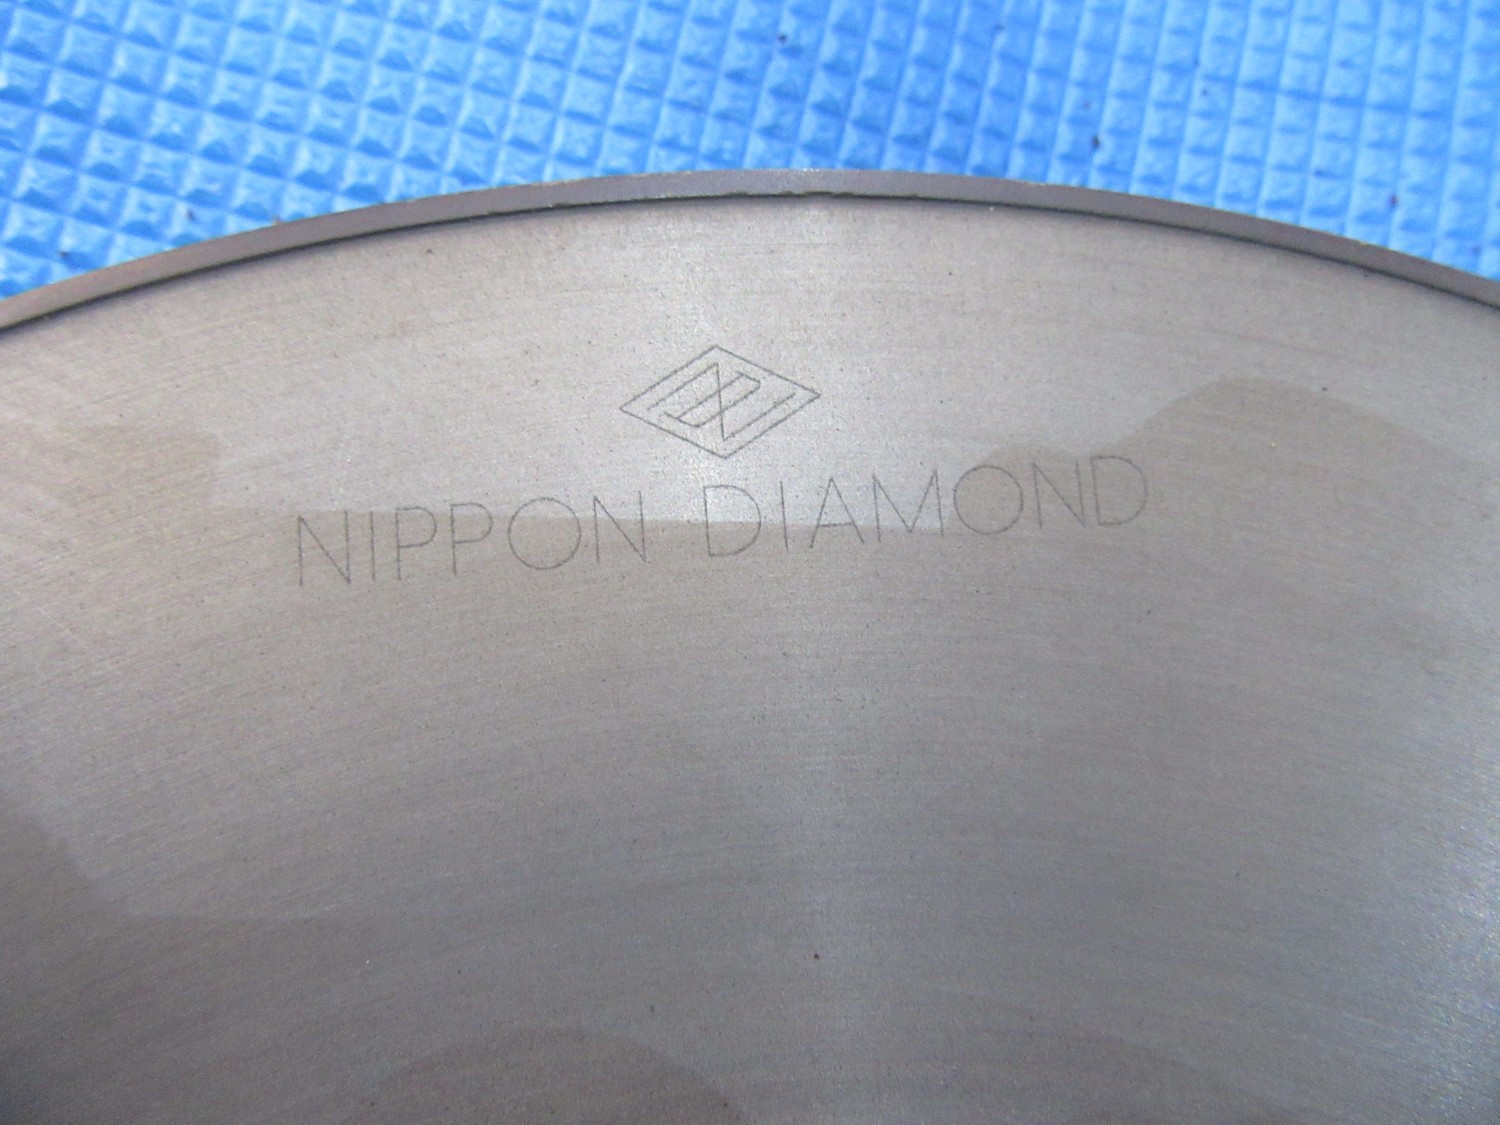 中古フランジ 【砥石フランジ】SD2000-N75BJ30 NIPPON DIAMOND